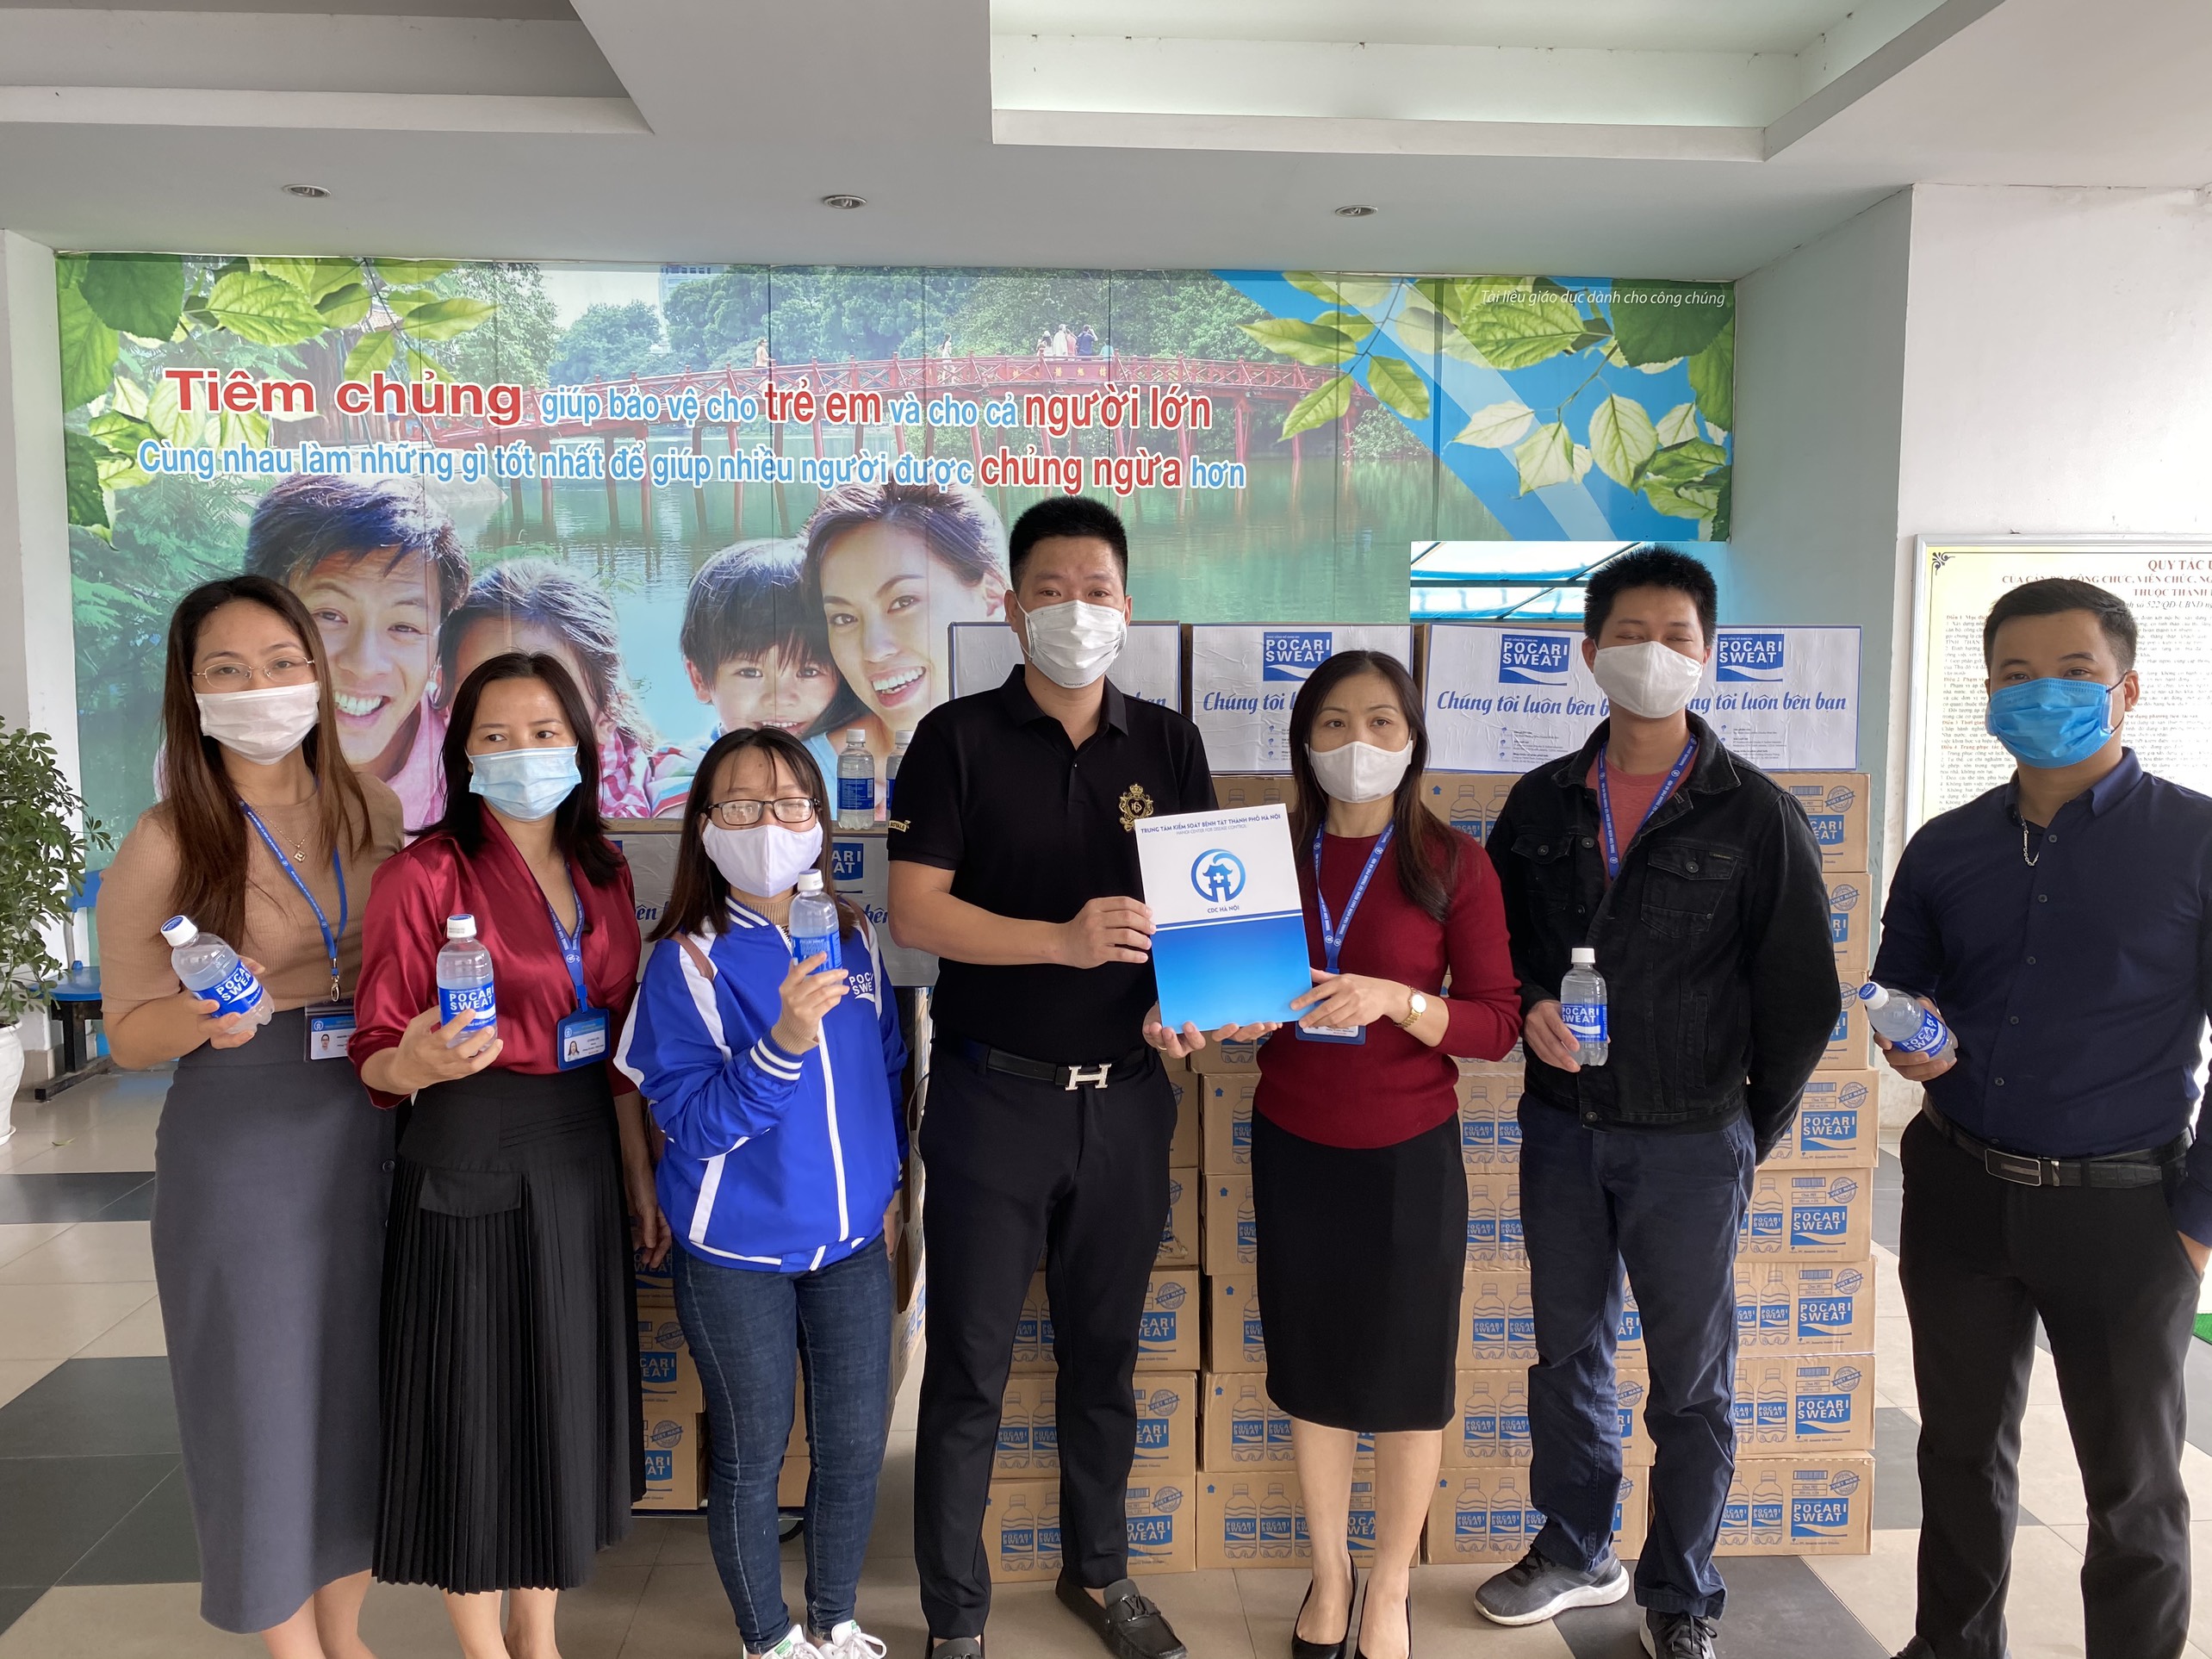 Thức uống bổ sung ion Pocari Sweat đồng hành cùng chiến dịch Xin cảm ơn ủng hộ các y bác sĩ chống Covid-19